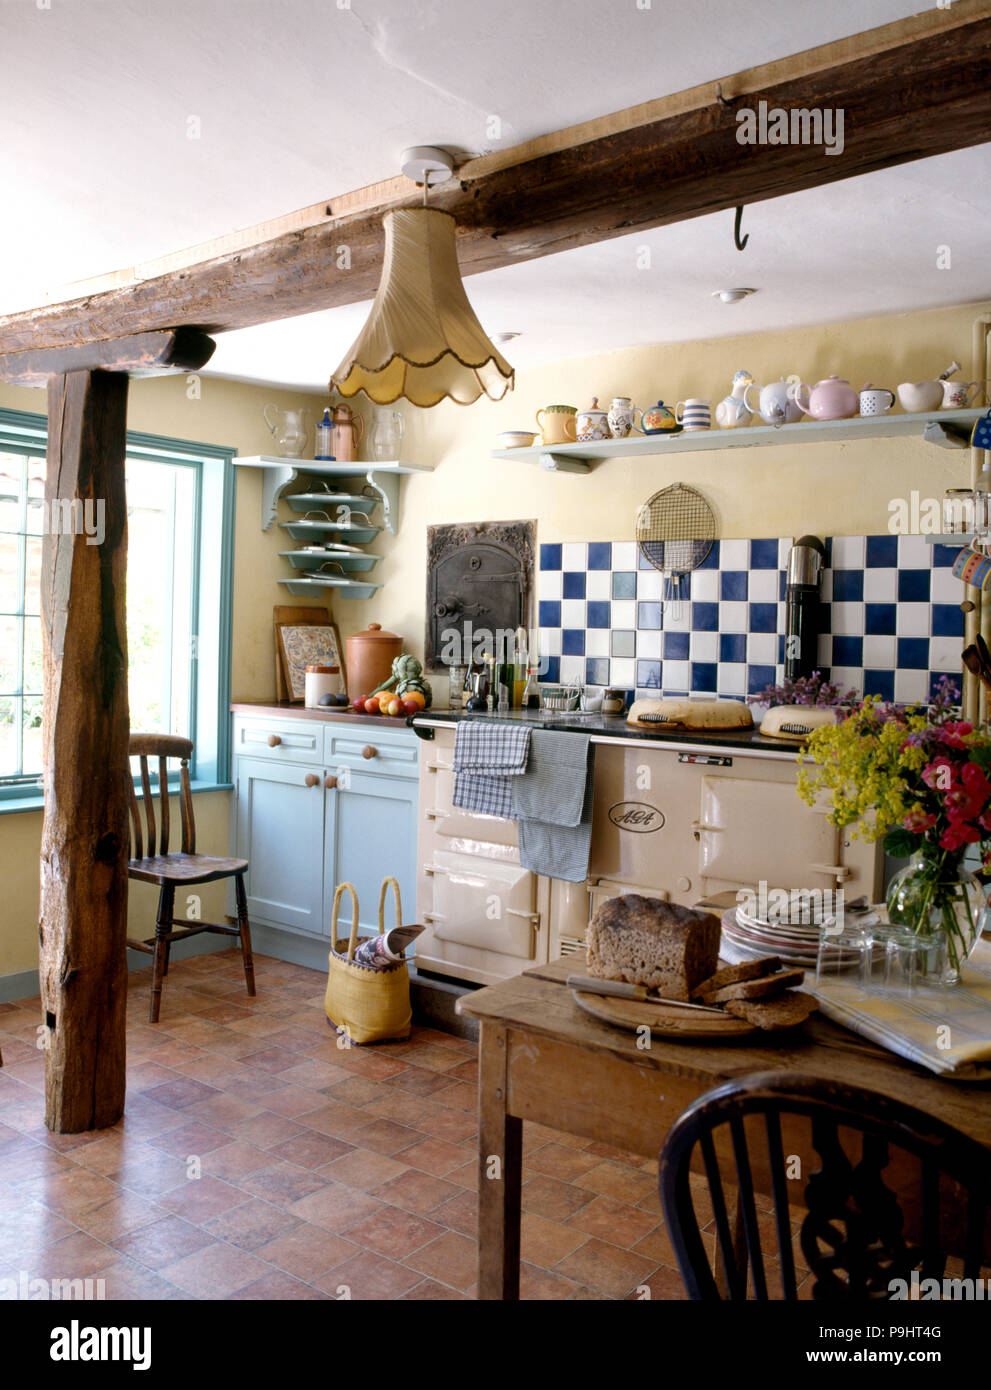 Blau + weißen Fliesen über eine Creme Aga in einem Land, Küche mit Linoleum Bodenbeläge und rustikalen Holzbalken Stockfoto